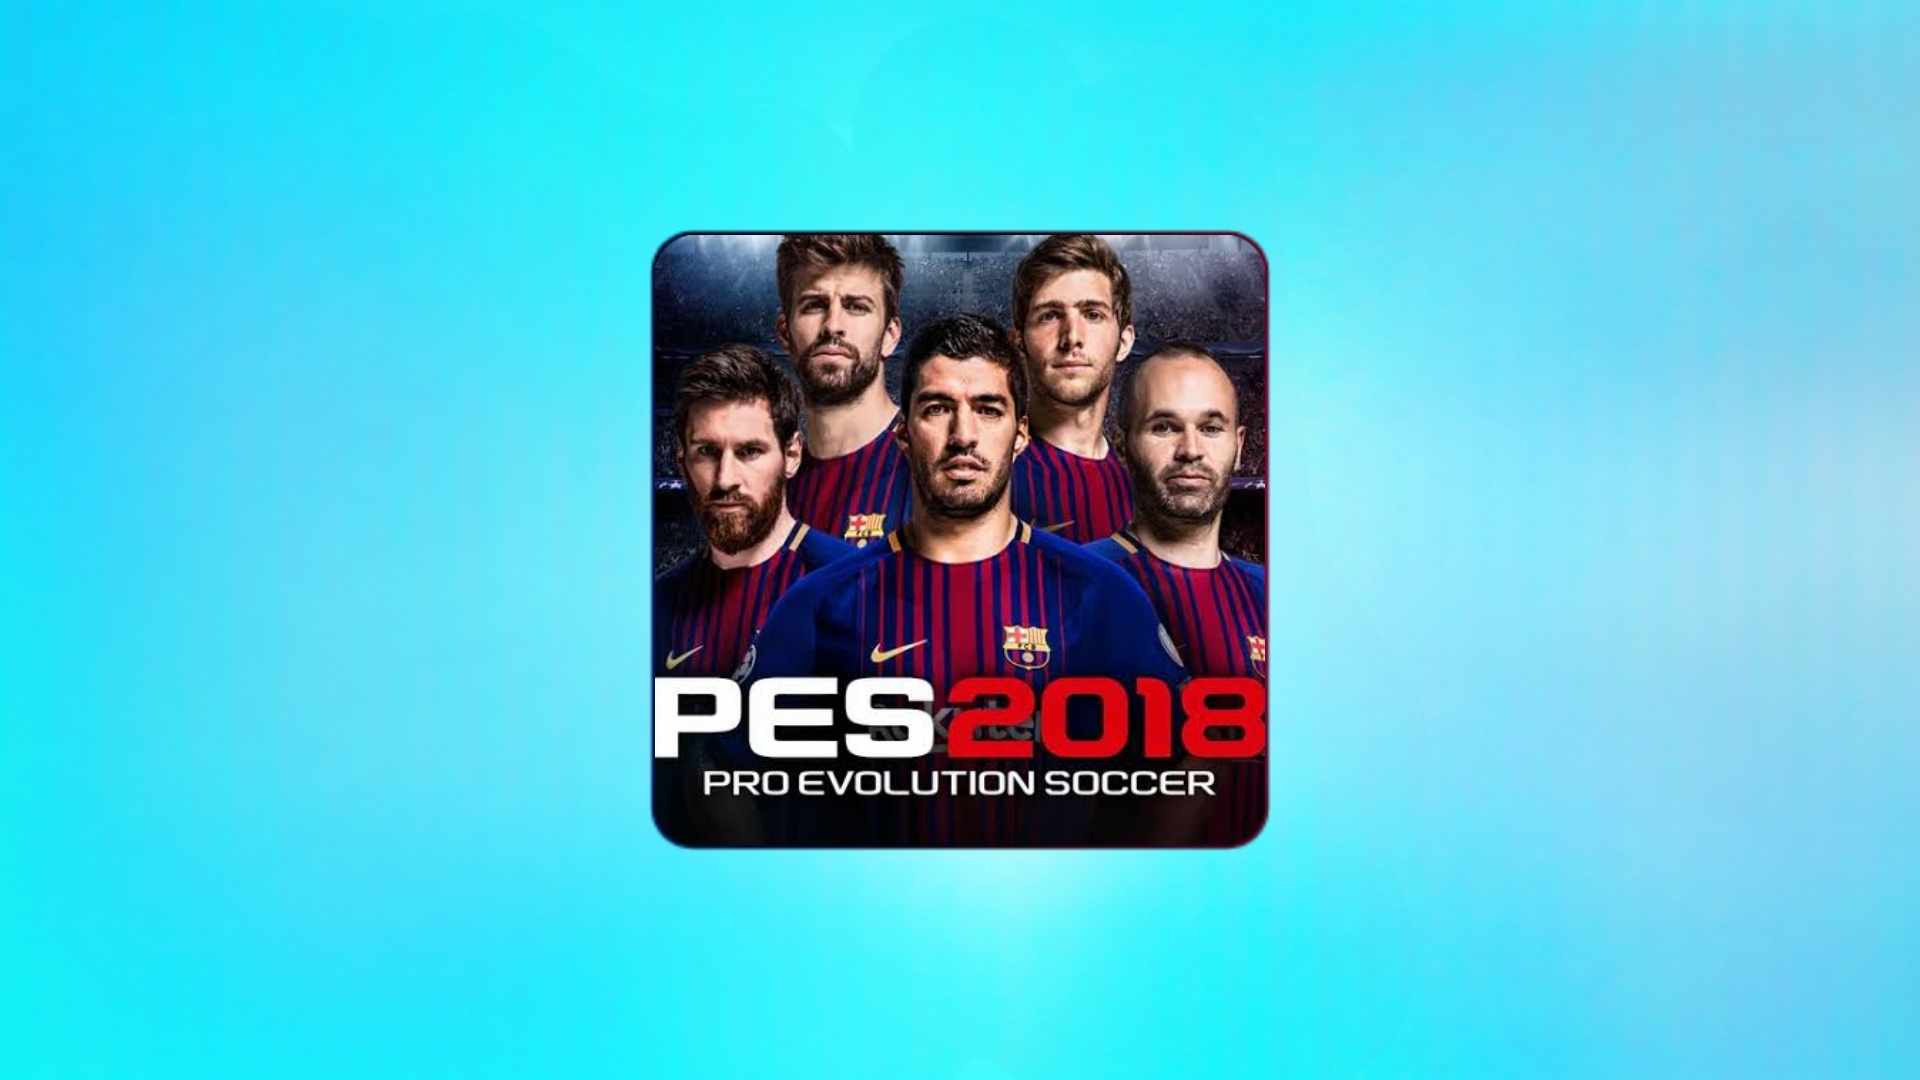 הורד את משחק PES 2018 פרשנות ערבית ללא אינטרנט לאנדרואיד בחינם